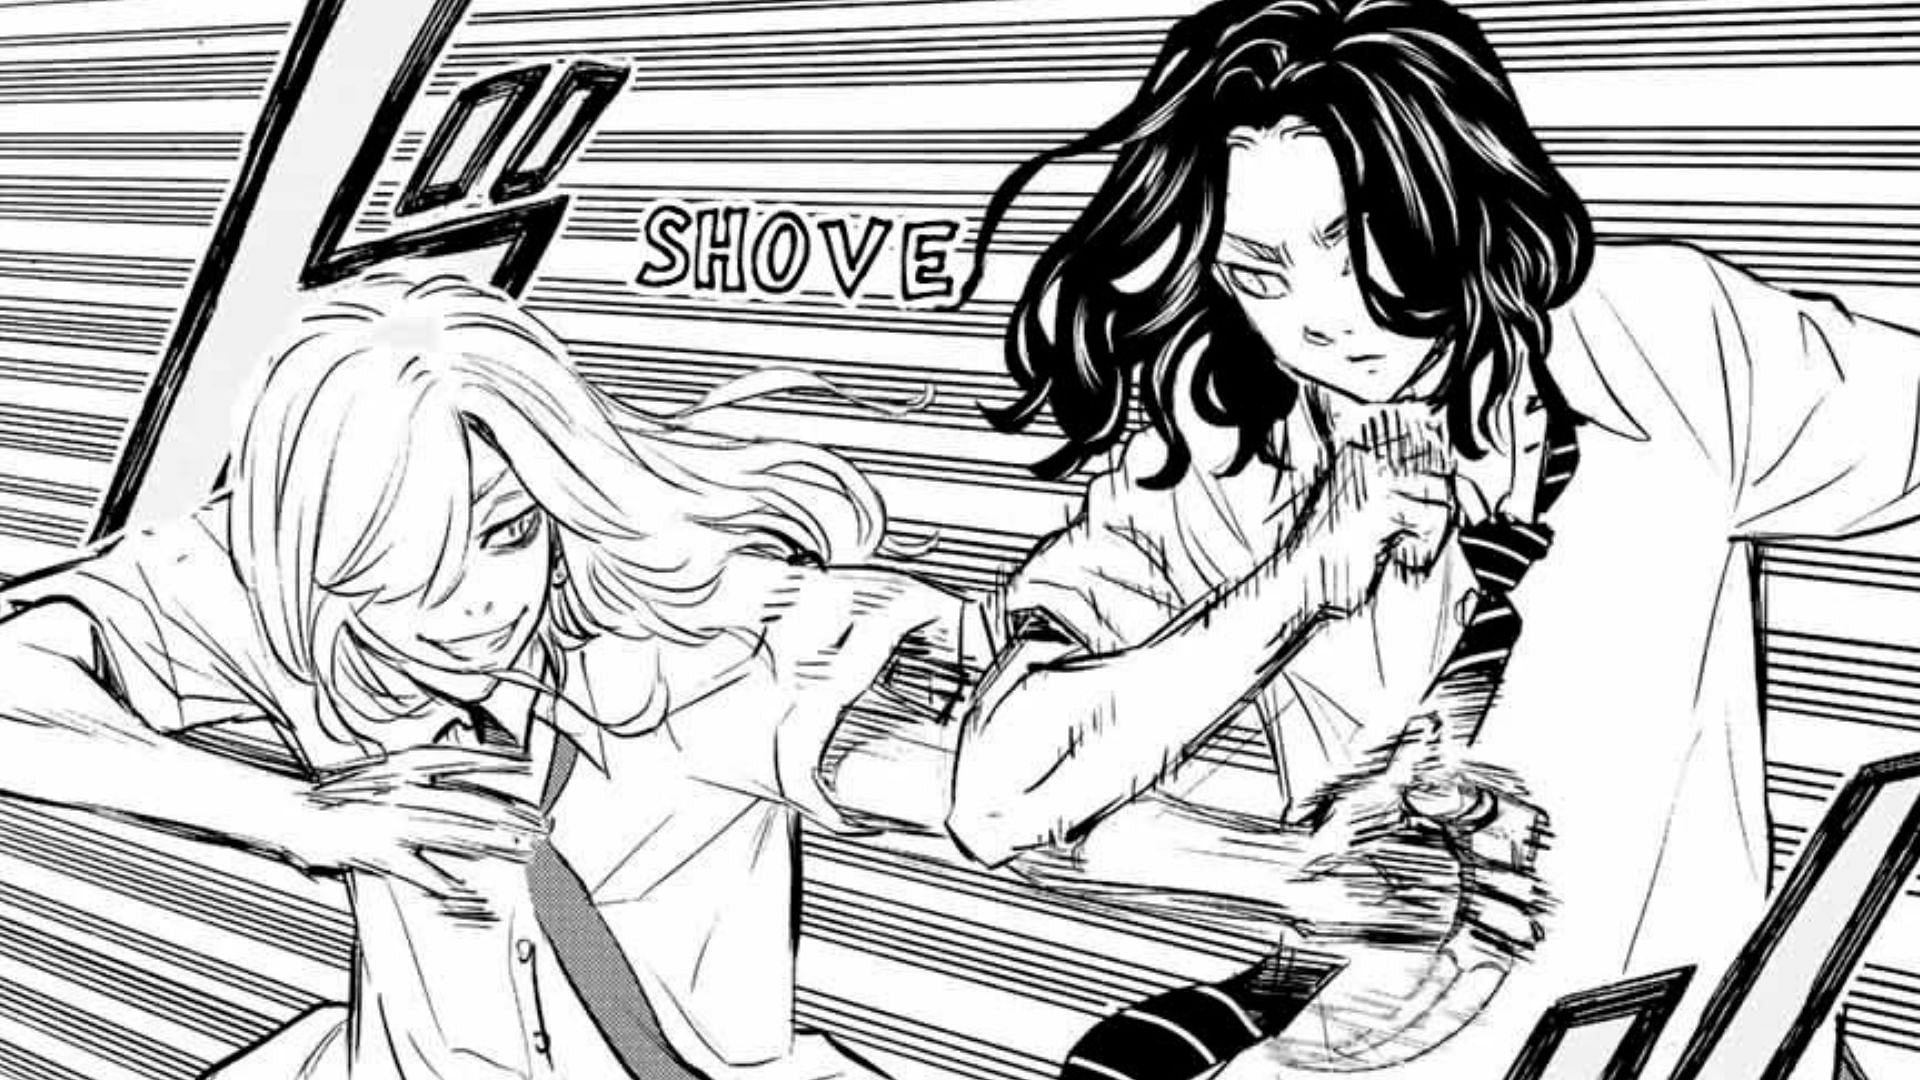 Kojiro attacking Baji with a knife (Image via Kodansha)